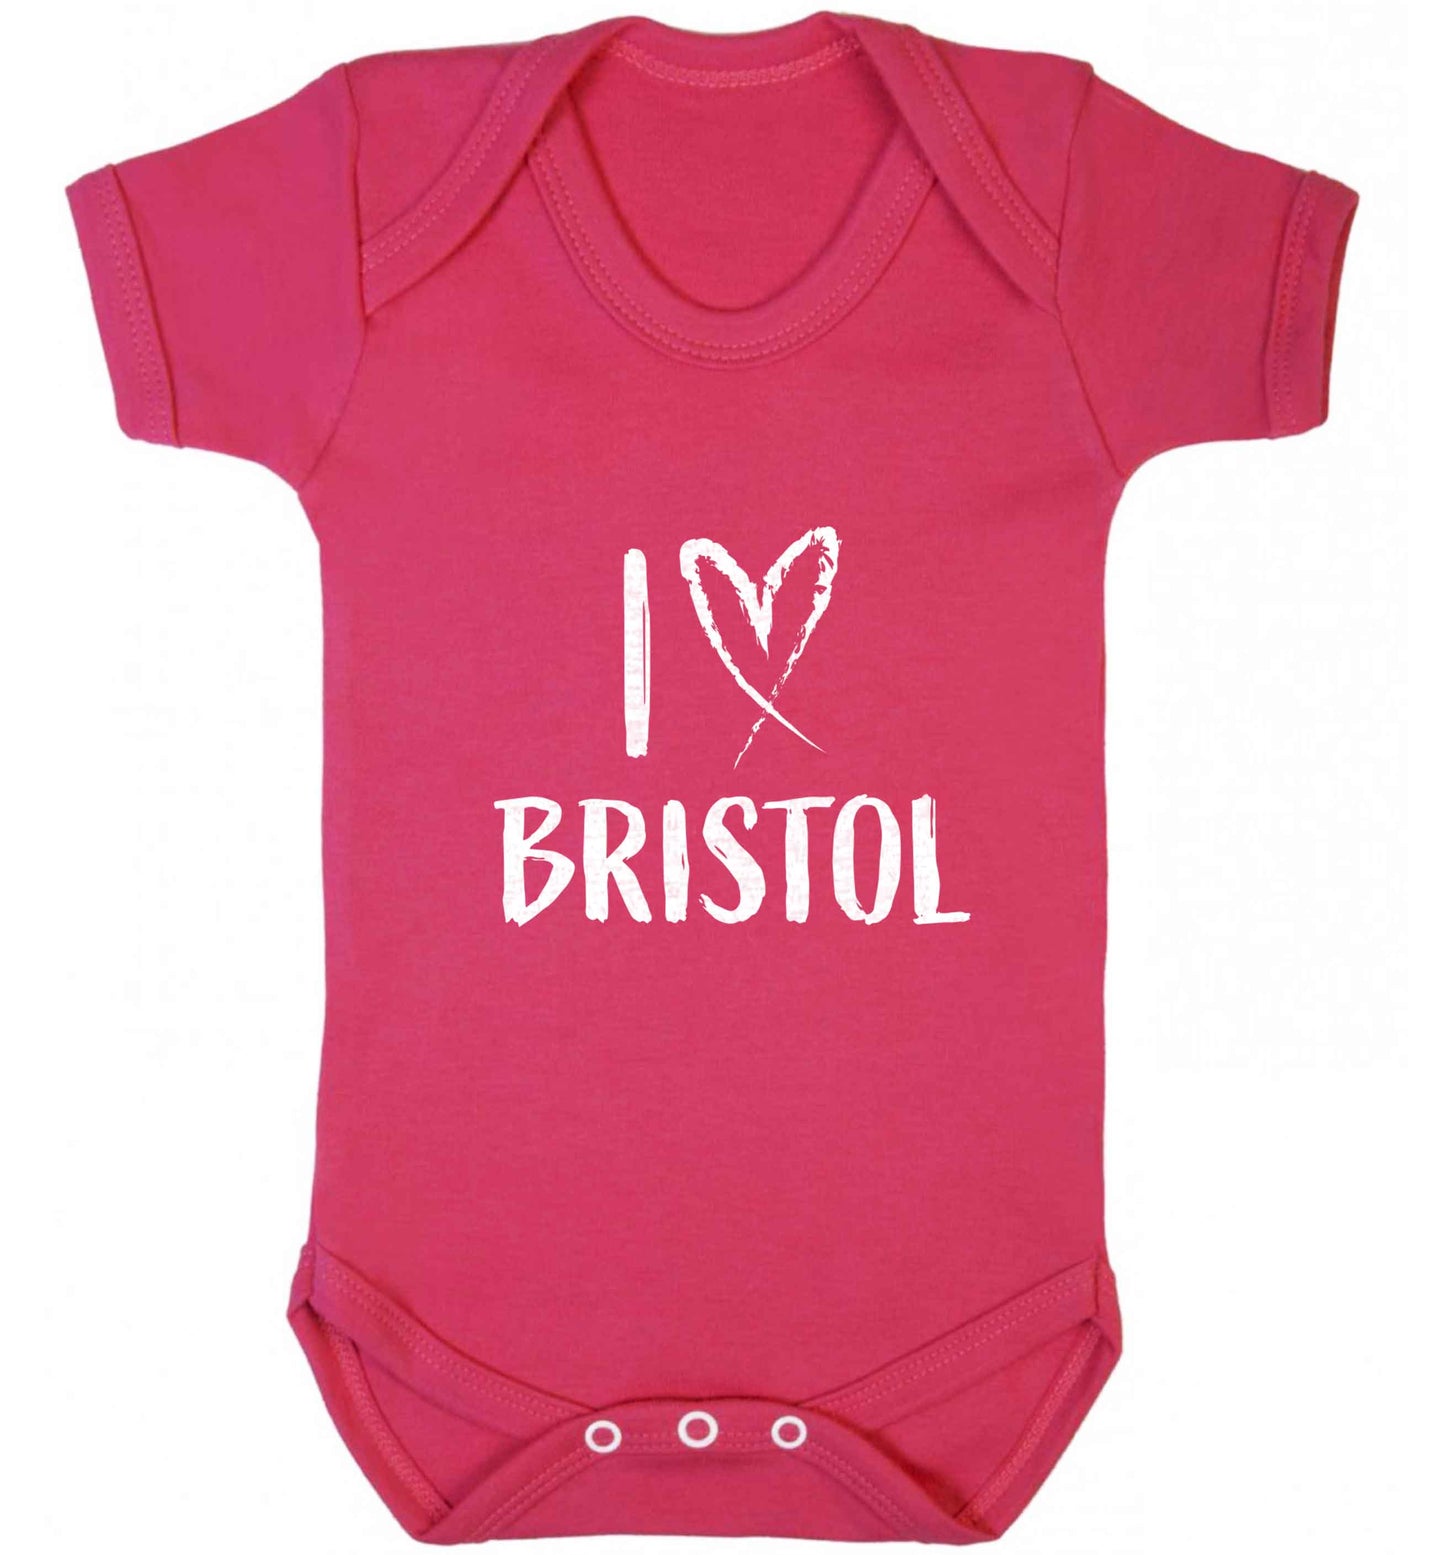 I love Bristol baby vest dark pink 18-24 months